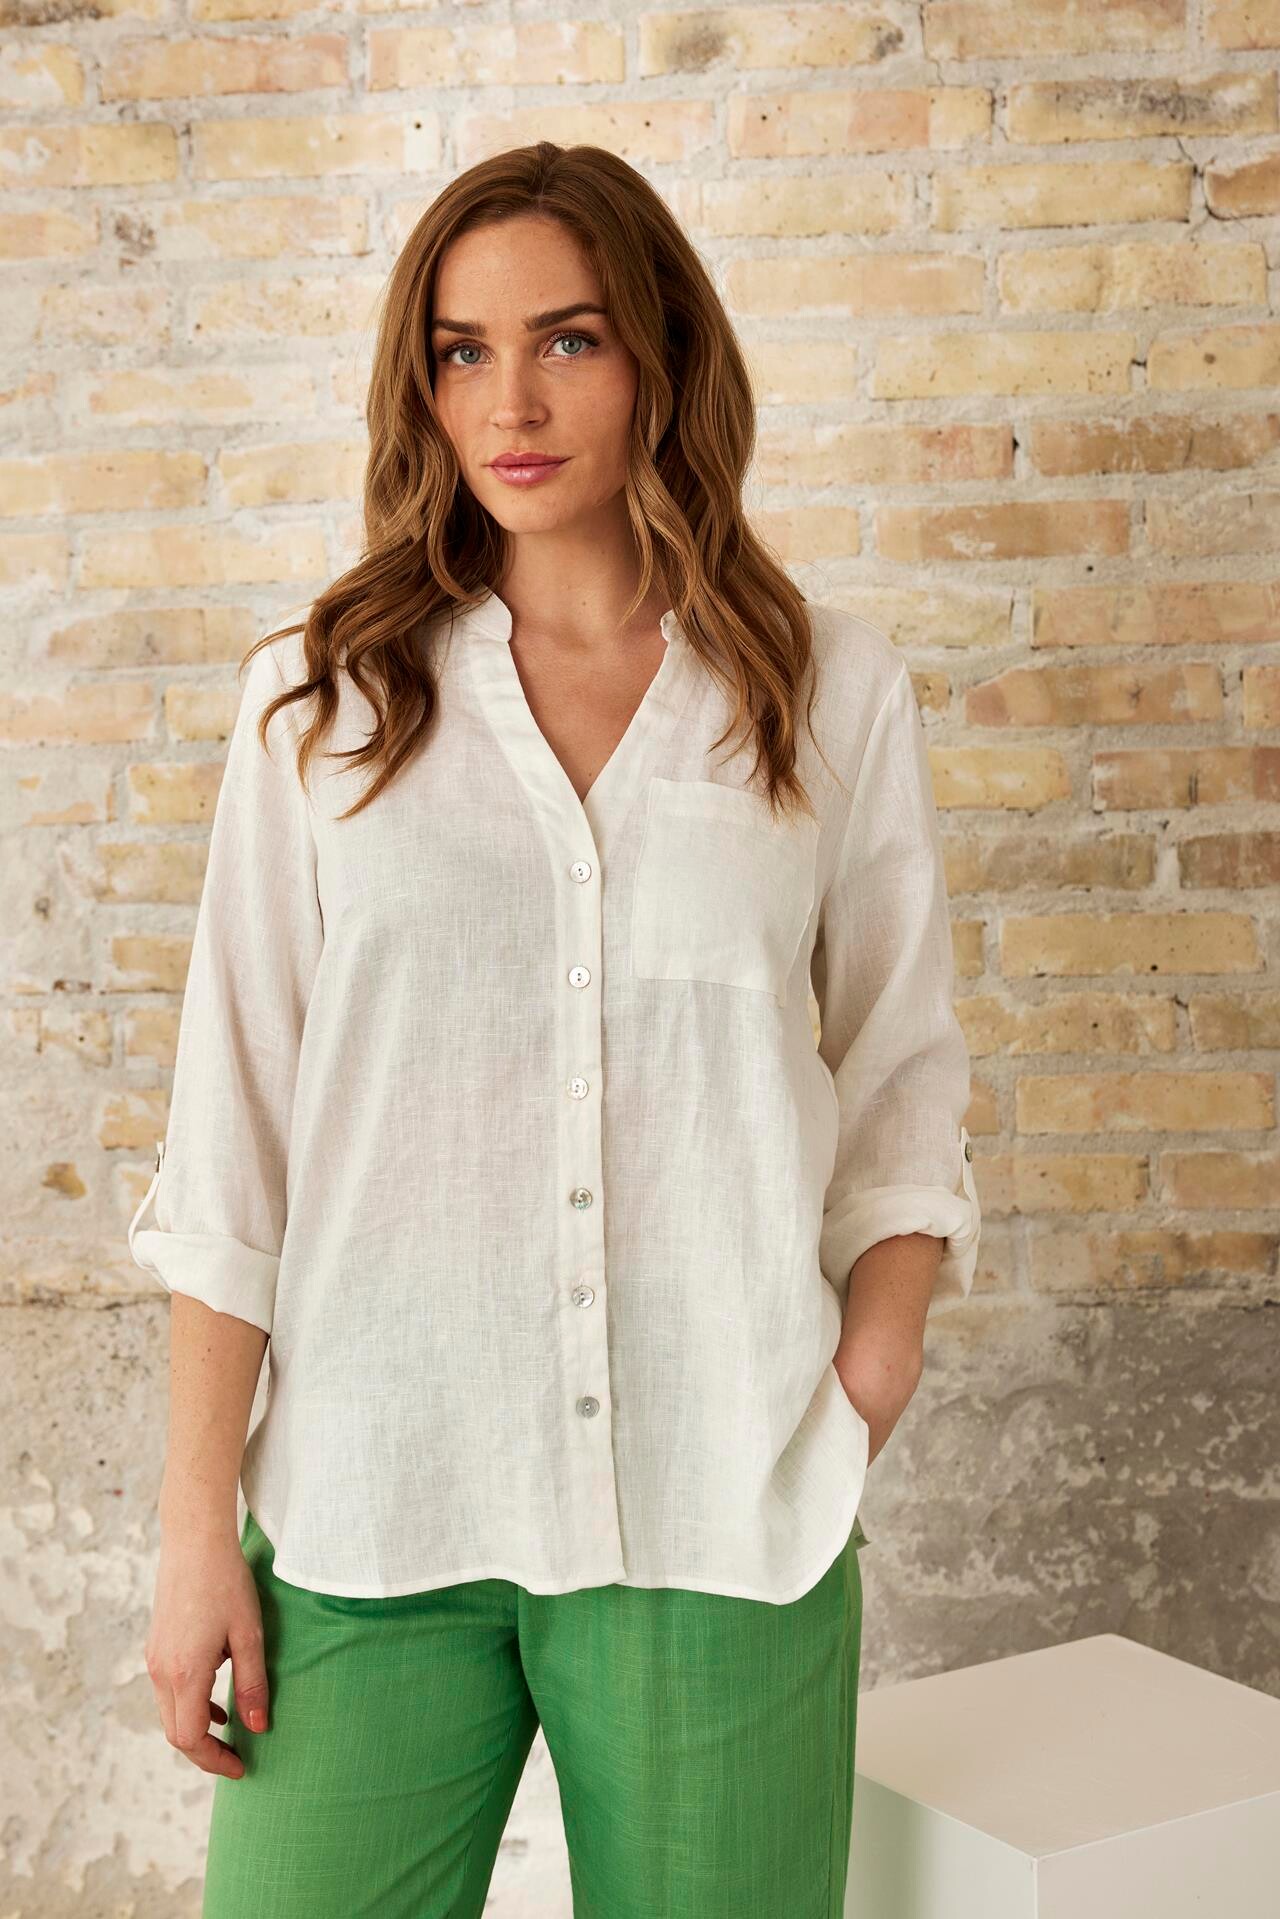 Se IN FRONT Linea Skjorte, Farve: Off White, Størrelse: S, Dame hos Infront Women